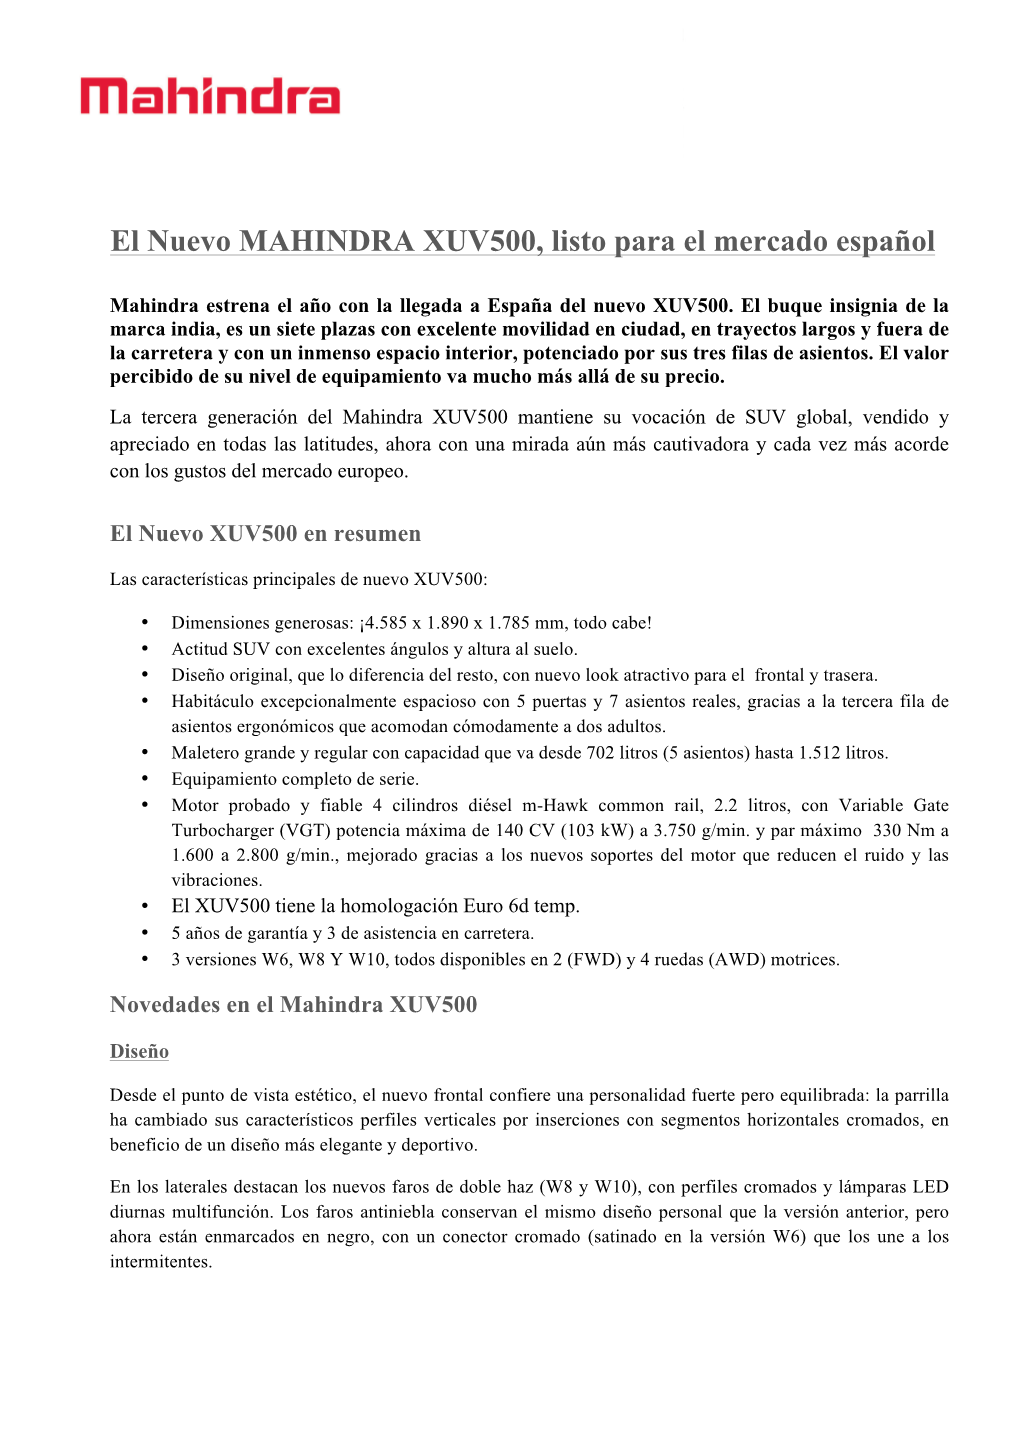 El Nuevo MAHINDRA XUV500, Listo Para El Mercado Español